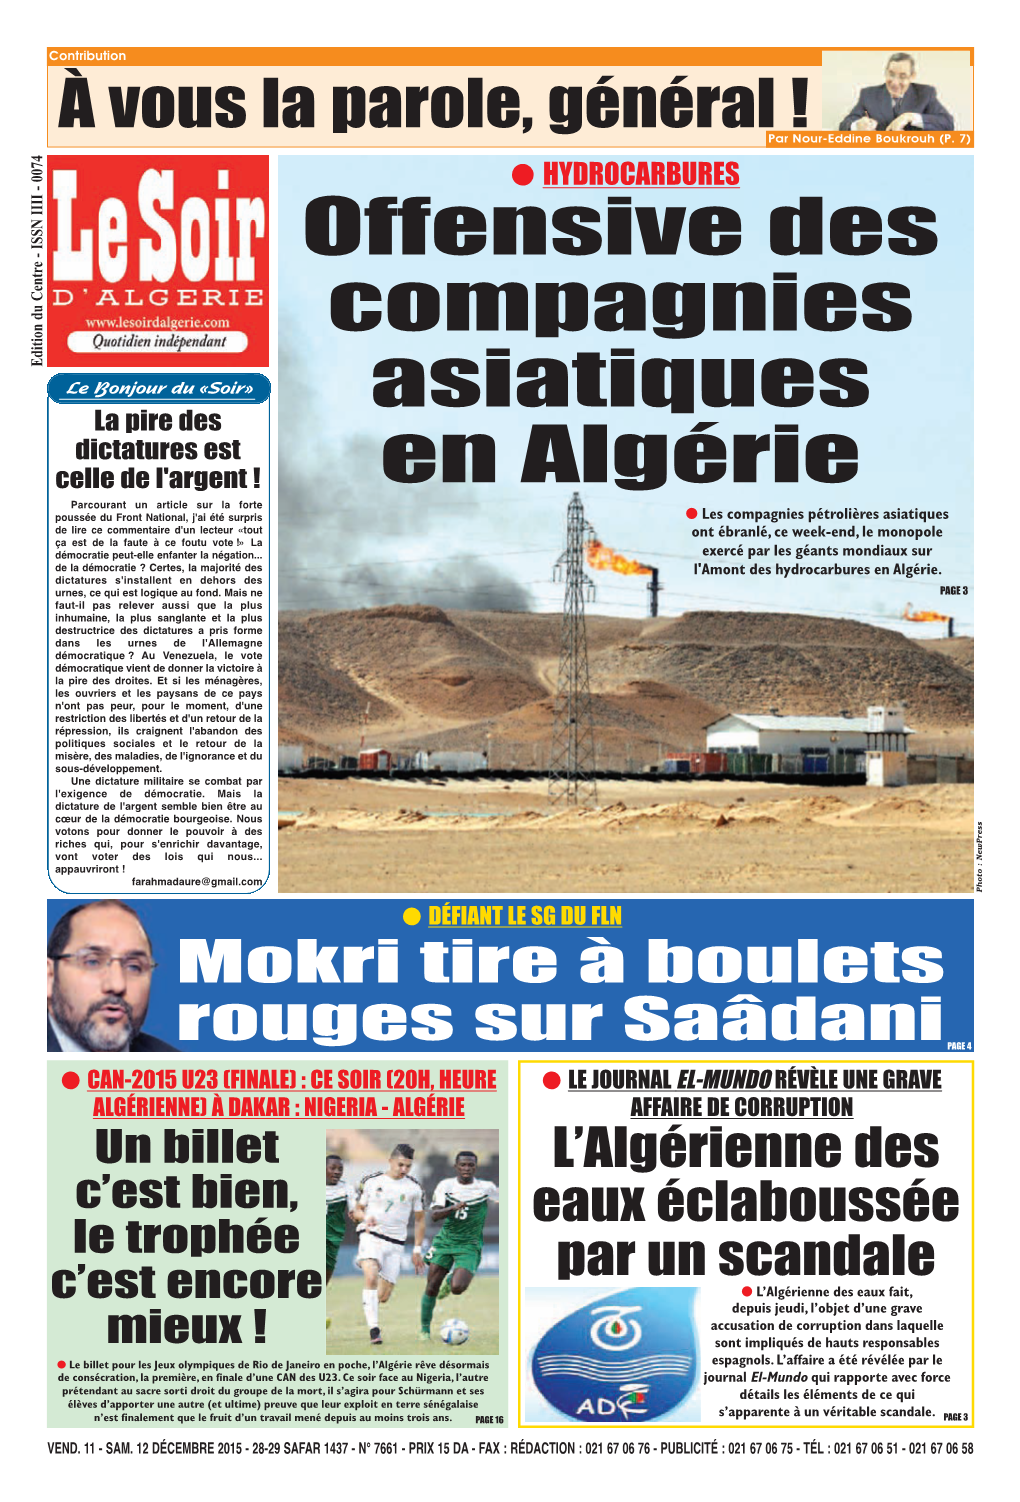 Offensive Des Compagnies Asiatiques En Algérie